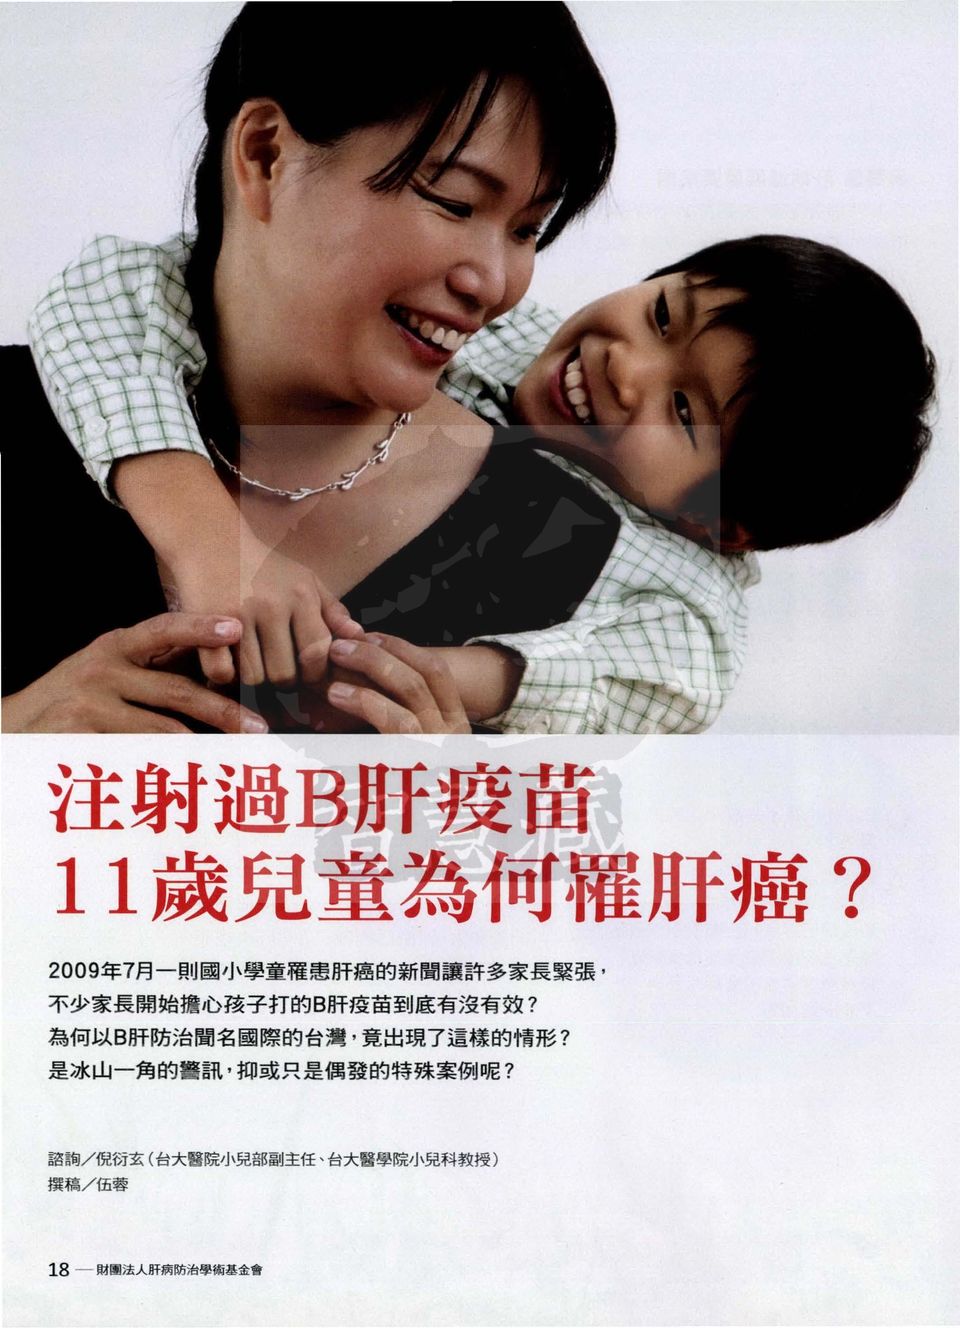 疫 苗 到 底 有 沒 有 放? 為 何 以 B 肝 防 治 聞 名 國 際 的 台 灣, 竟 出 現 7 這 樣 的 情 形?